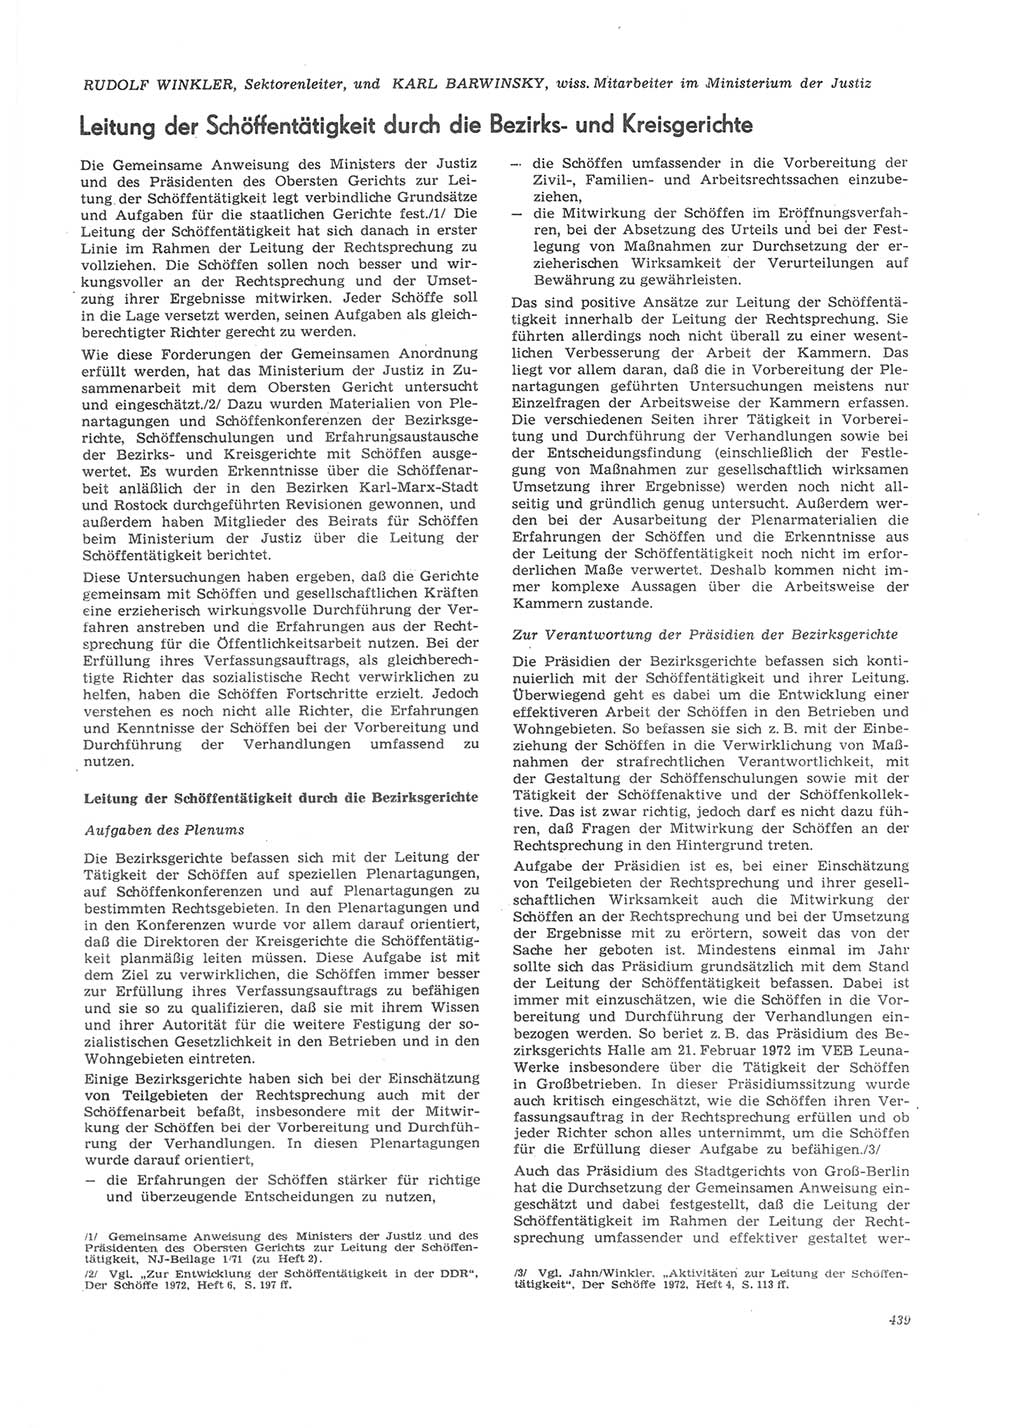 Neue Justiz (NJ), Zeitschrift für Recht und Rechtswissenschaft [Deutsche Demokratische Republik (DDR)], 26. Jahrgang 1972, Seite 439 (NJ DDR 1972, S. 439)